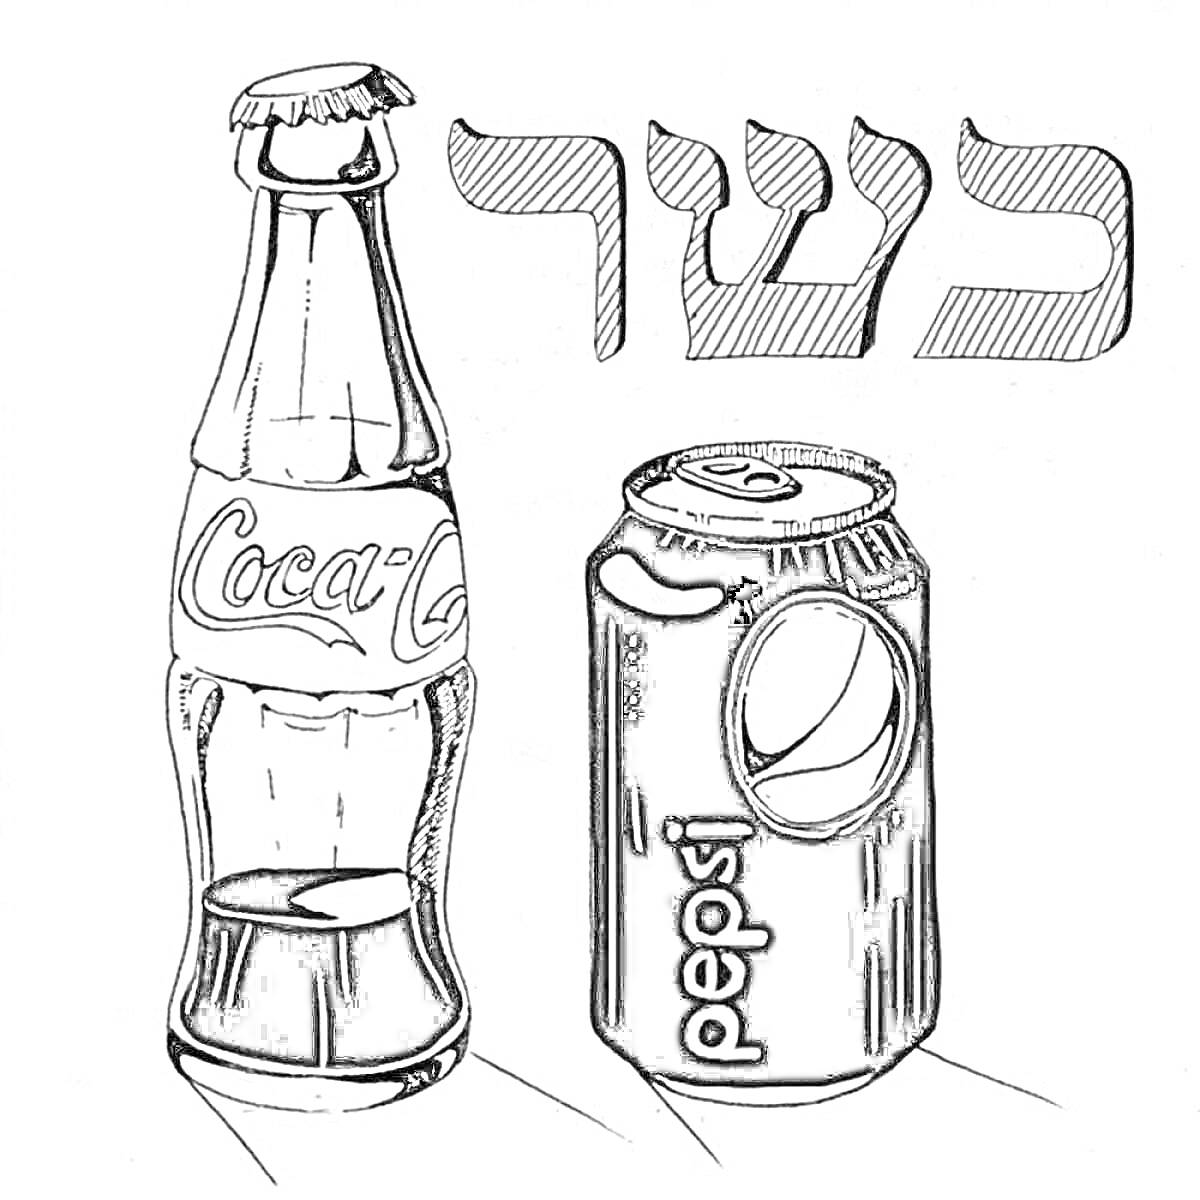 бутылка Coca-Cola и жестяная банка Pepsi с надписью на иврите